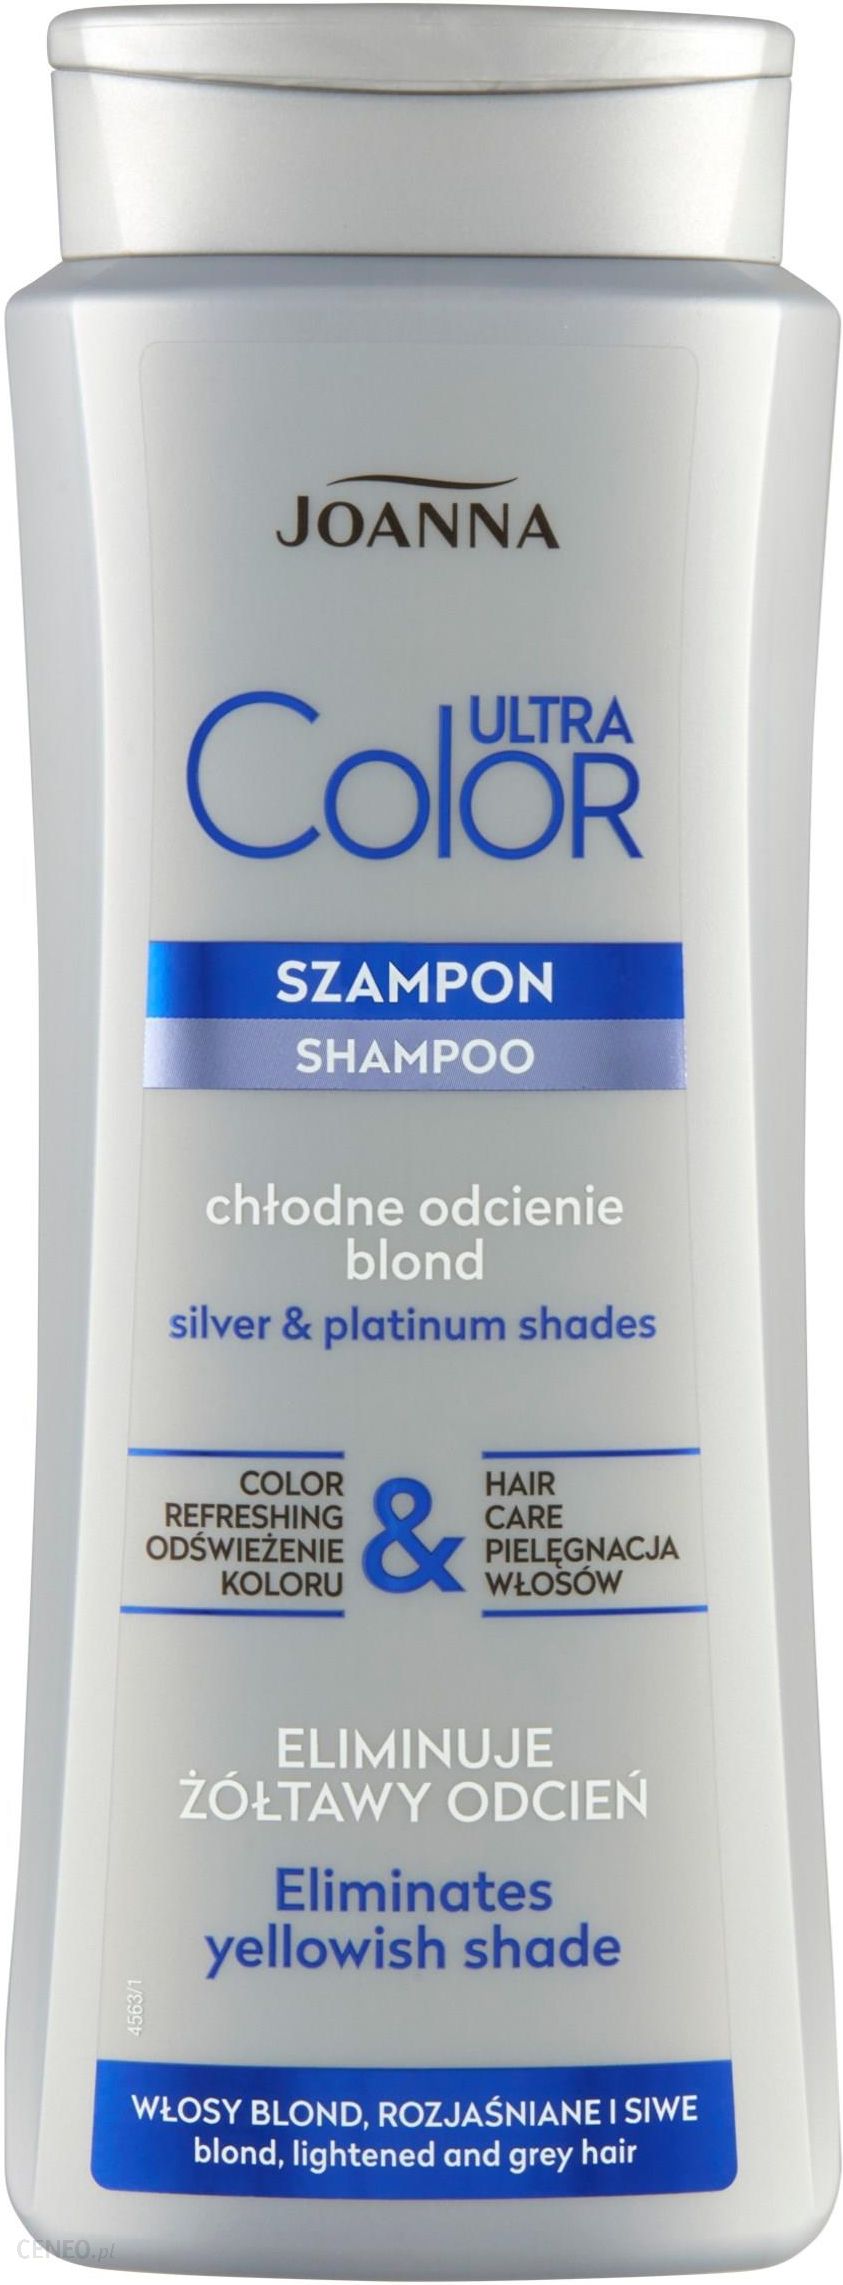 szampon nadający platynowy odcień